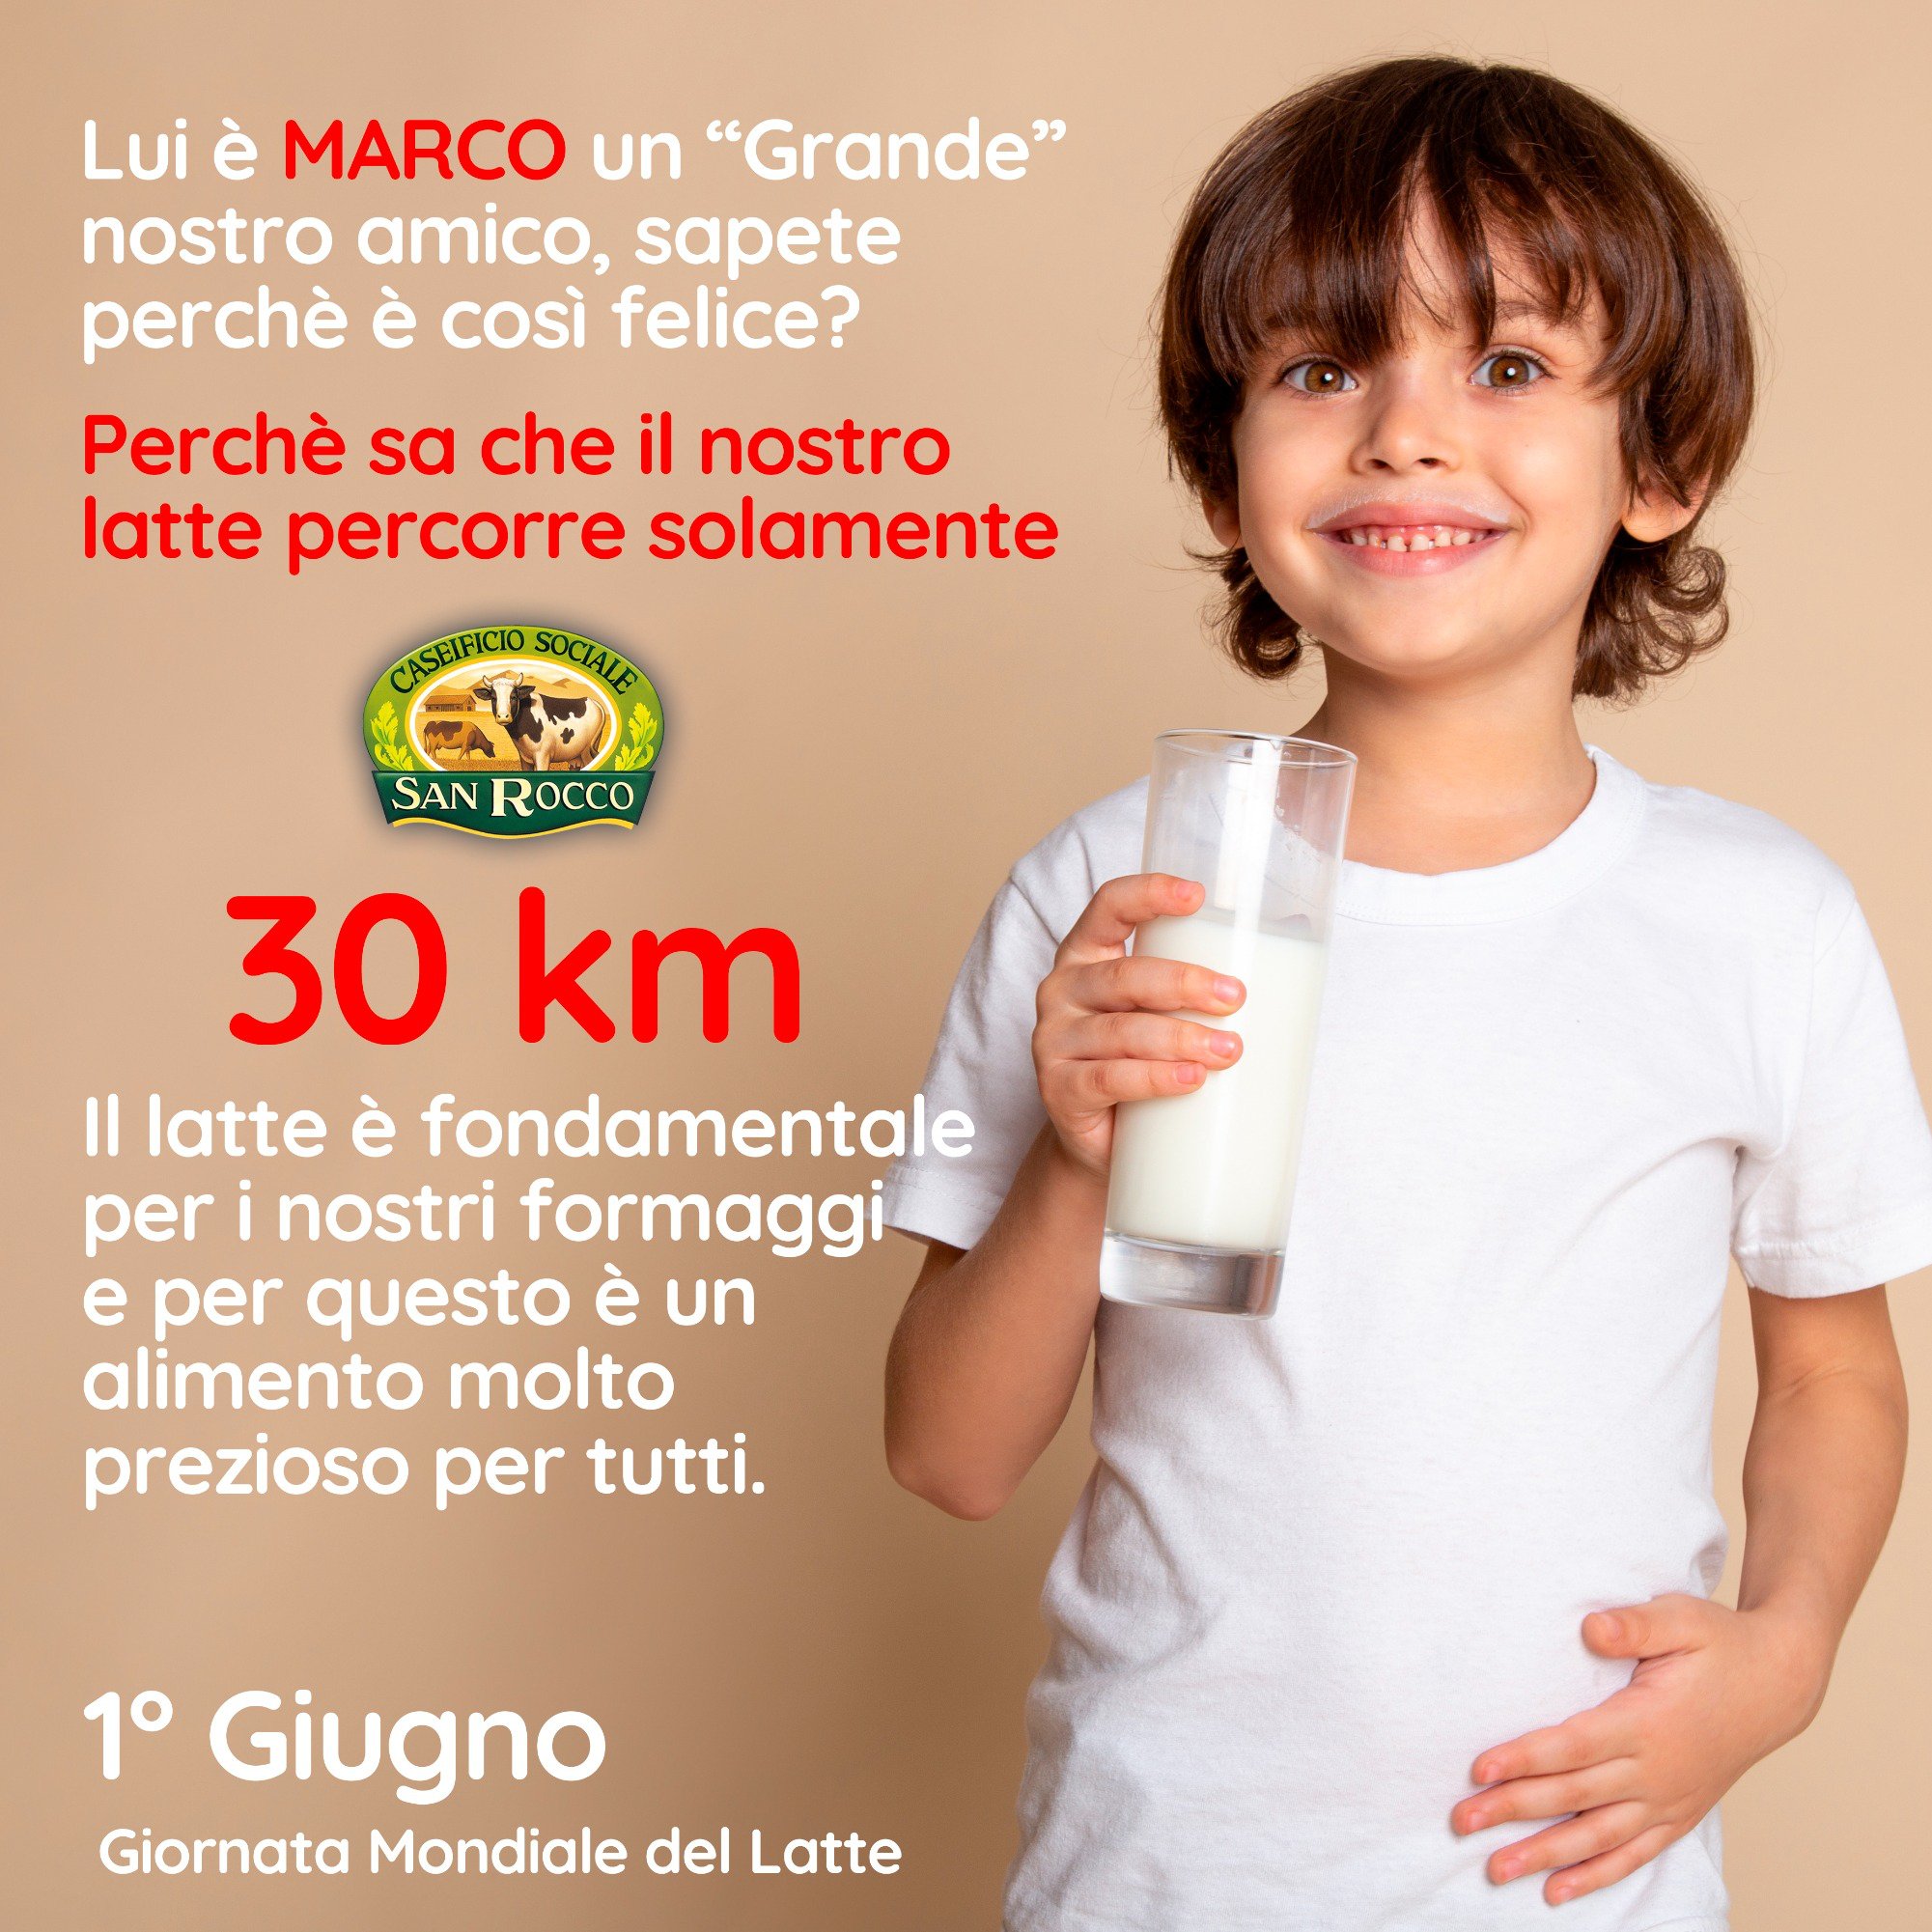 1 Giugno: Giornata Mondiale del Latte